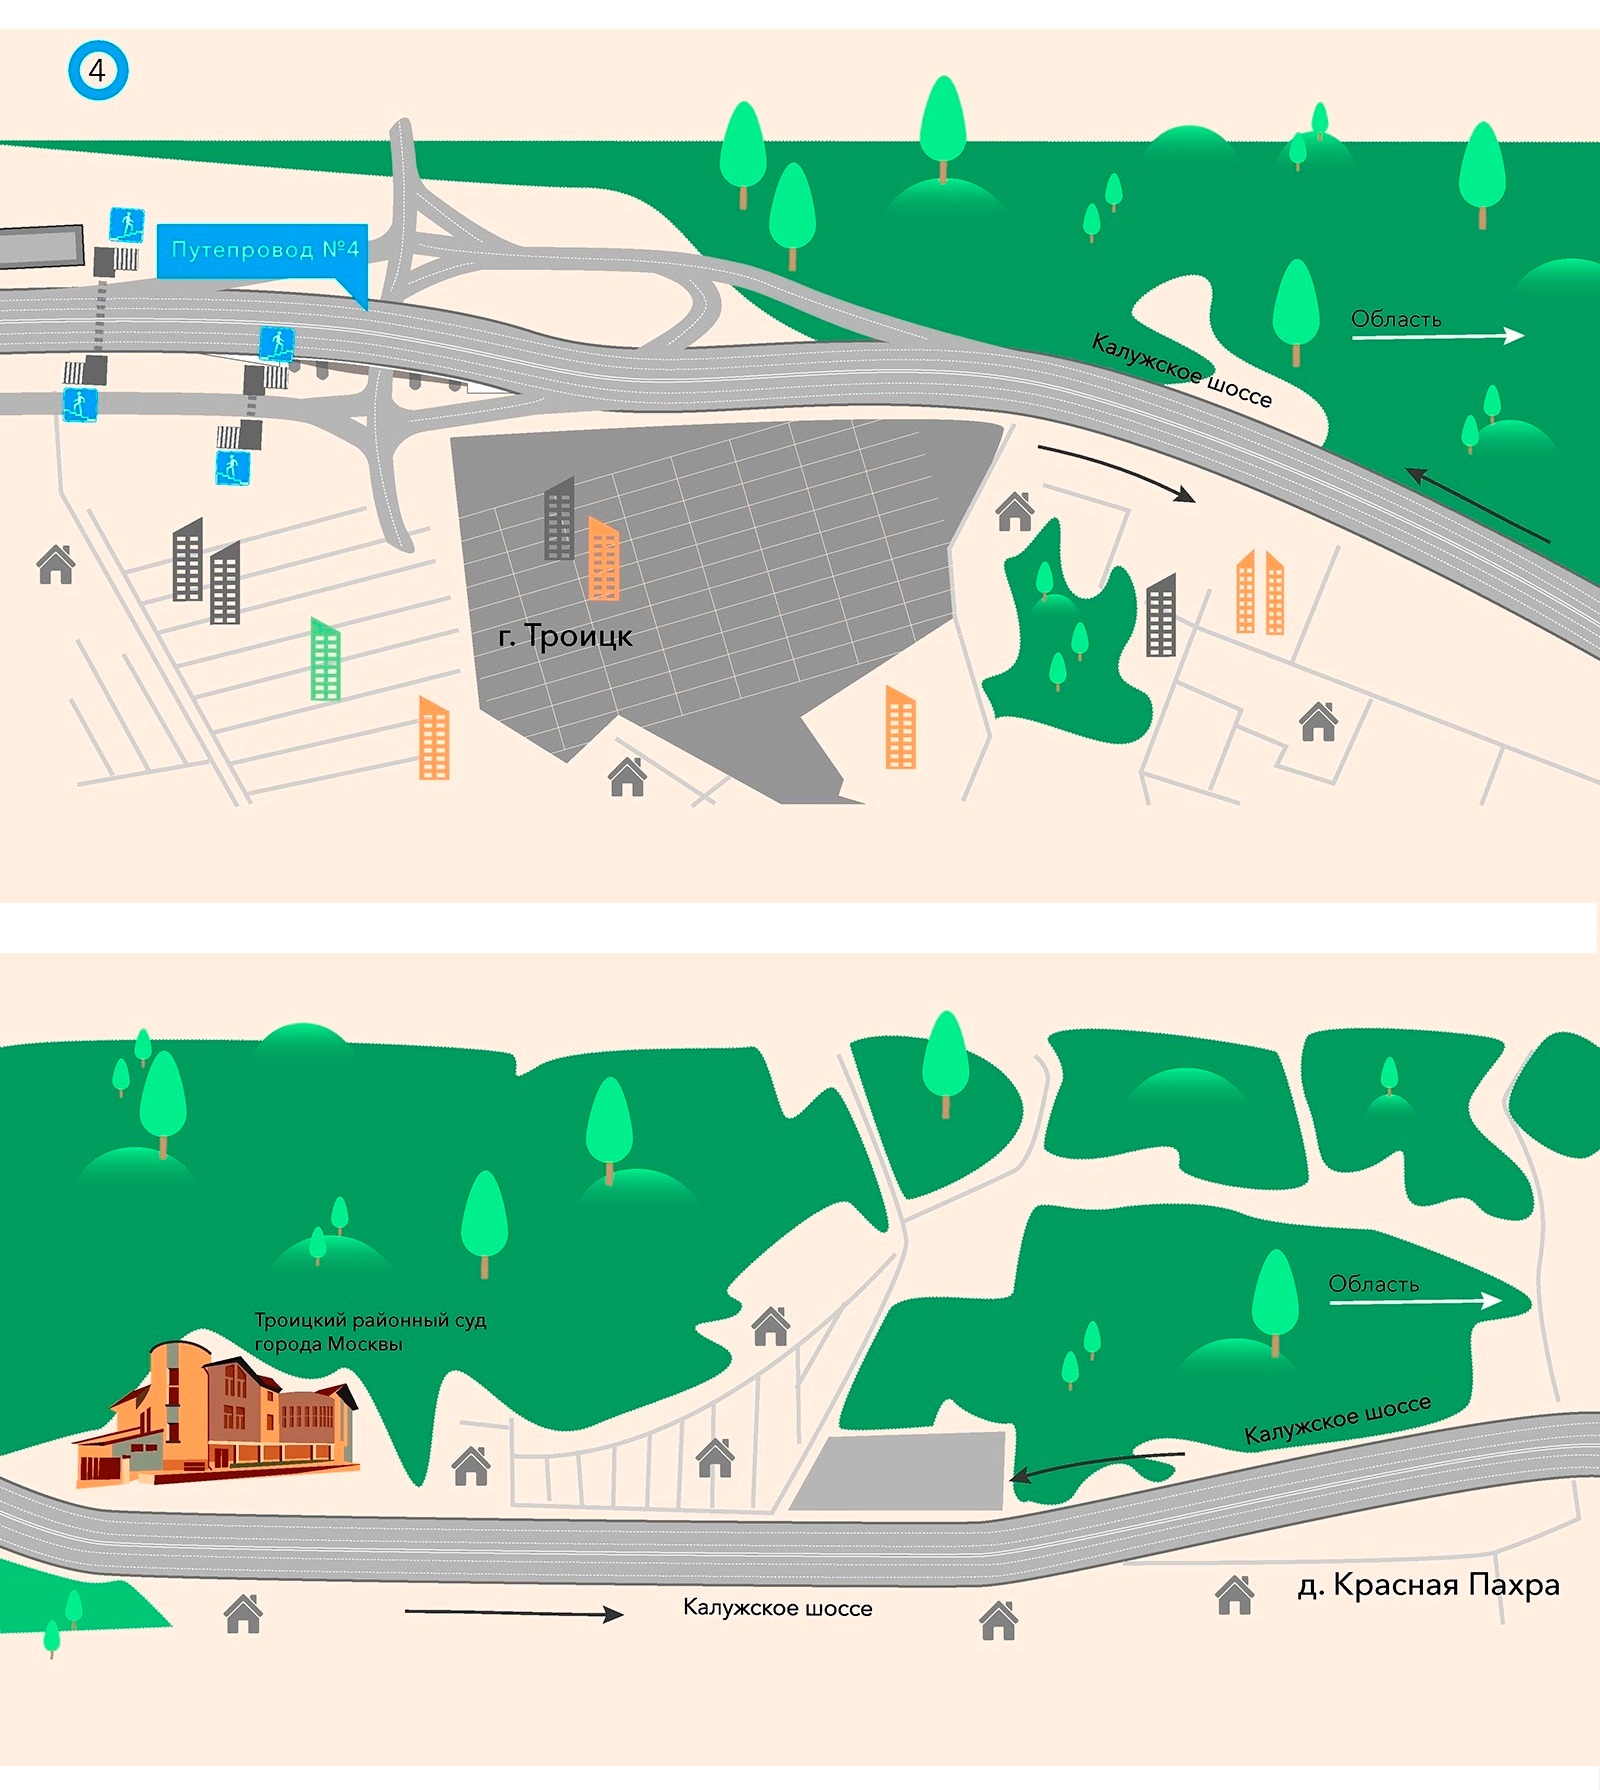 Второй этап реконструкции Калужского шоссе - в инфографике